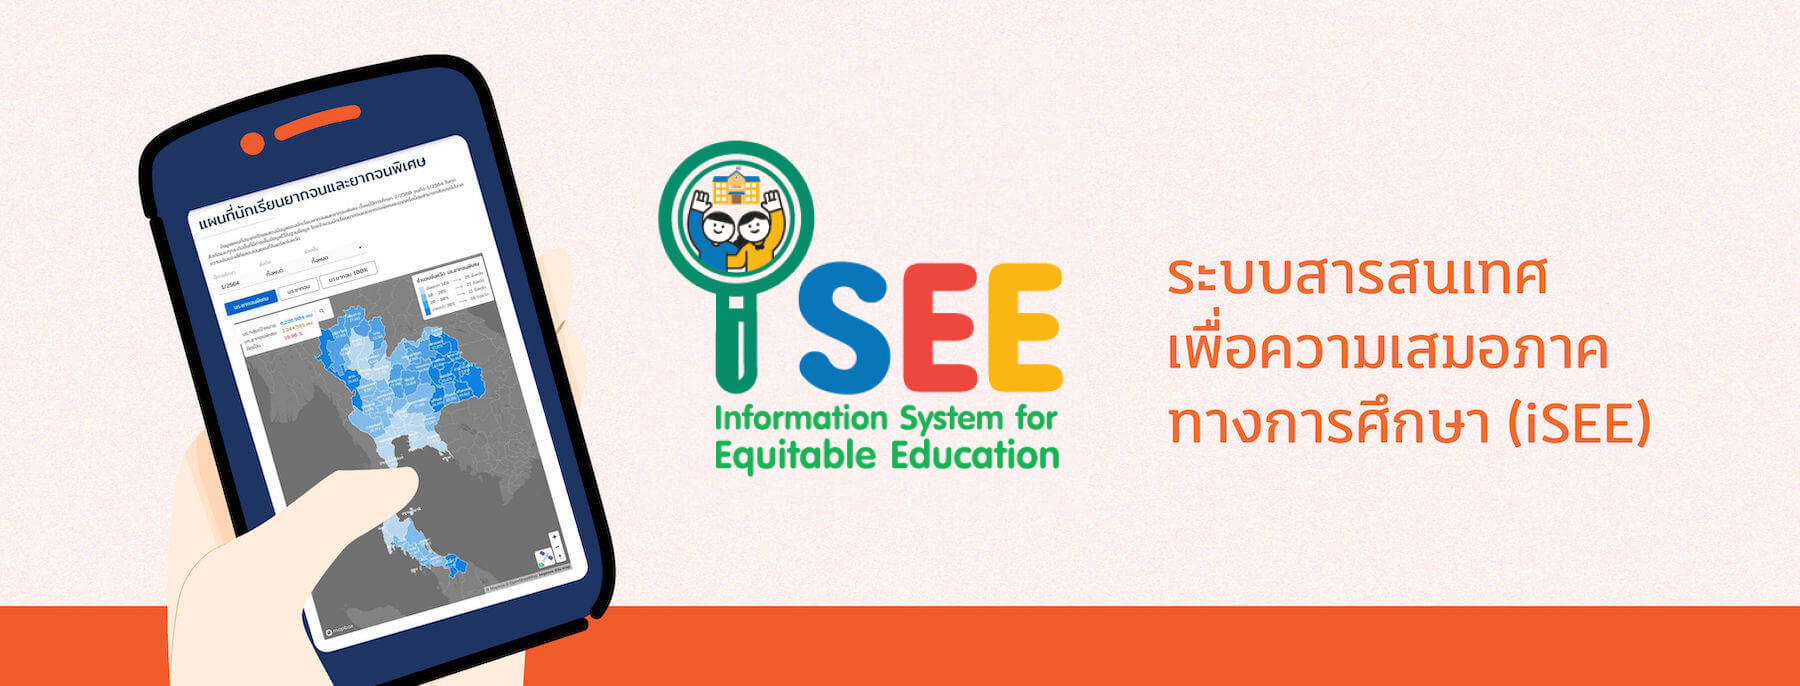 ระบบสารสนเทศเพื่อความเสมอภาคทางการศึกษา (iSEE)